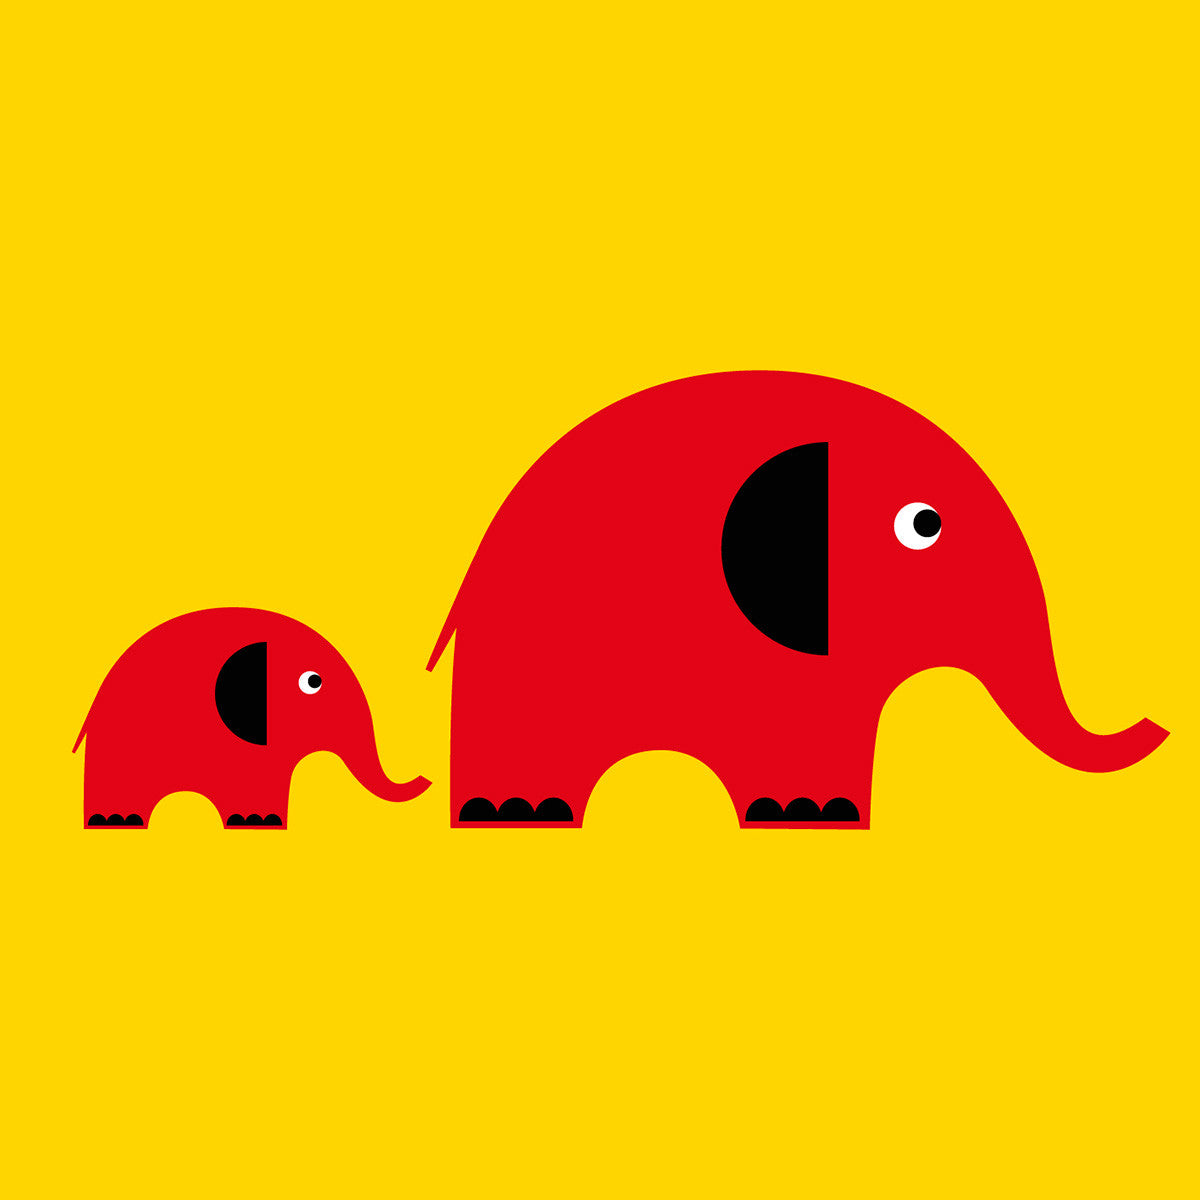 Two elephants card